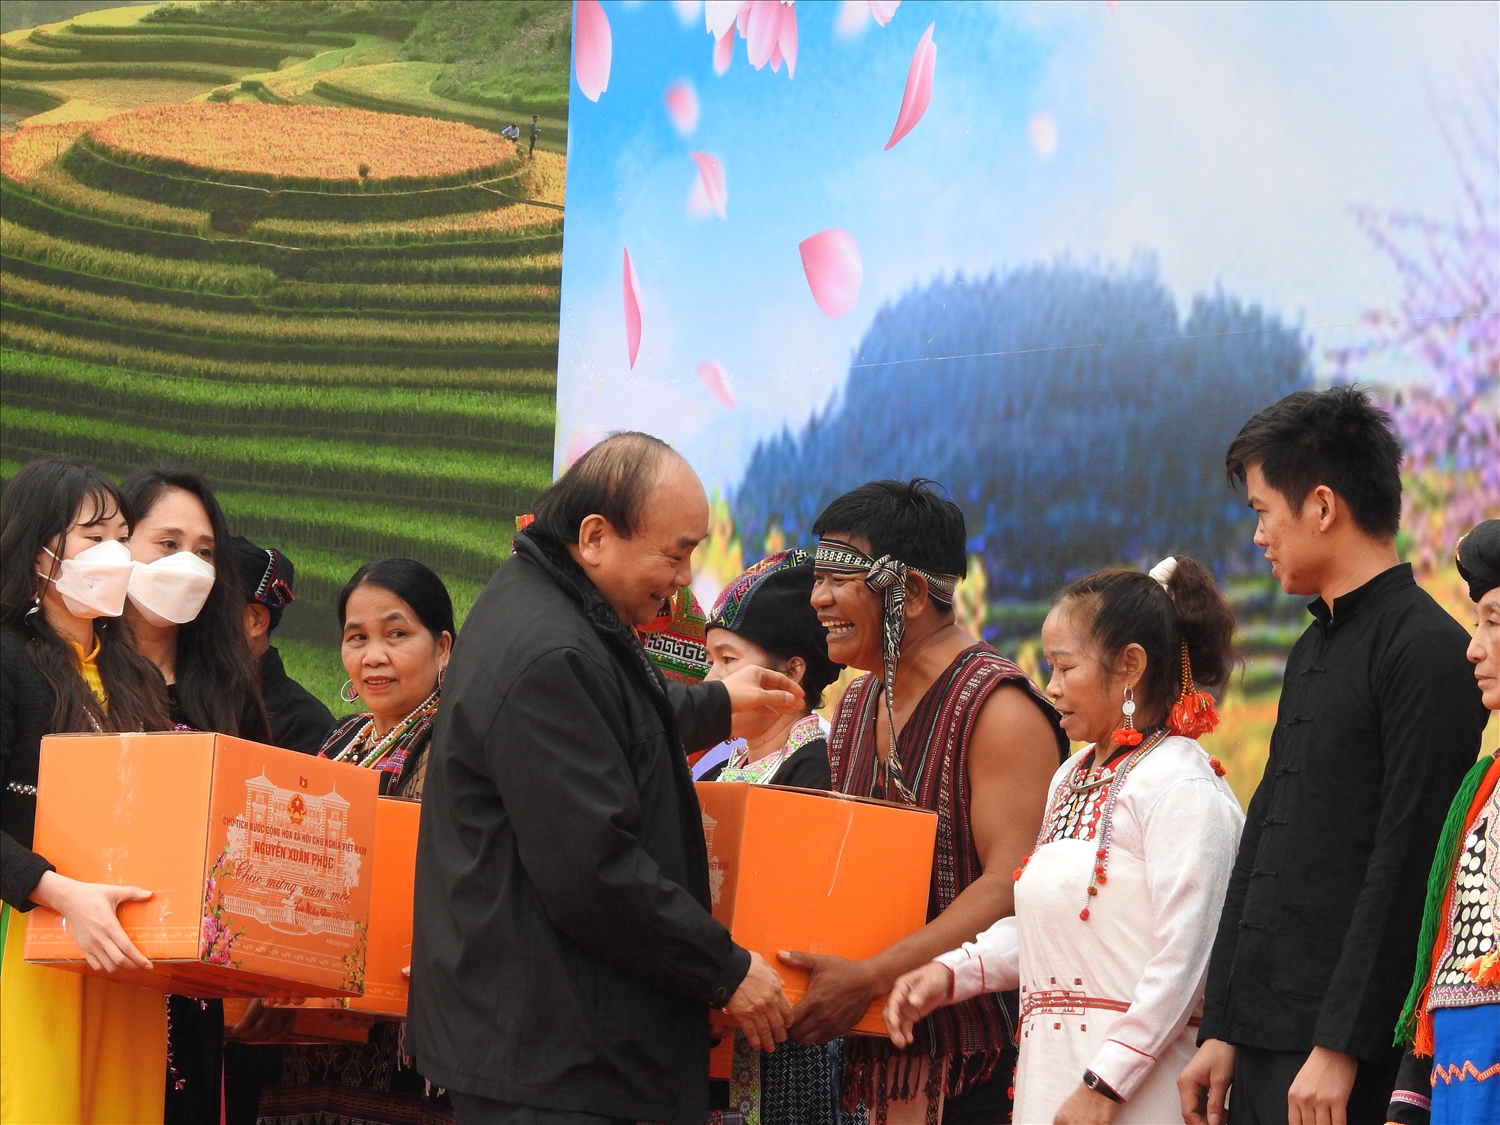 Tại Ngày hội, Chủ tịch nước Nguyễn Xuân Phúc đã dành những tình cảm thân thương nhất bằng những món quà thiết thực gửi tới đồng bào các dân tộc đang sinh sống tại Làng